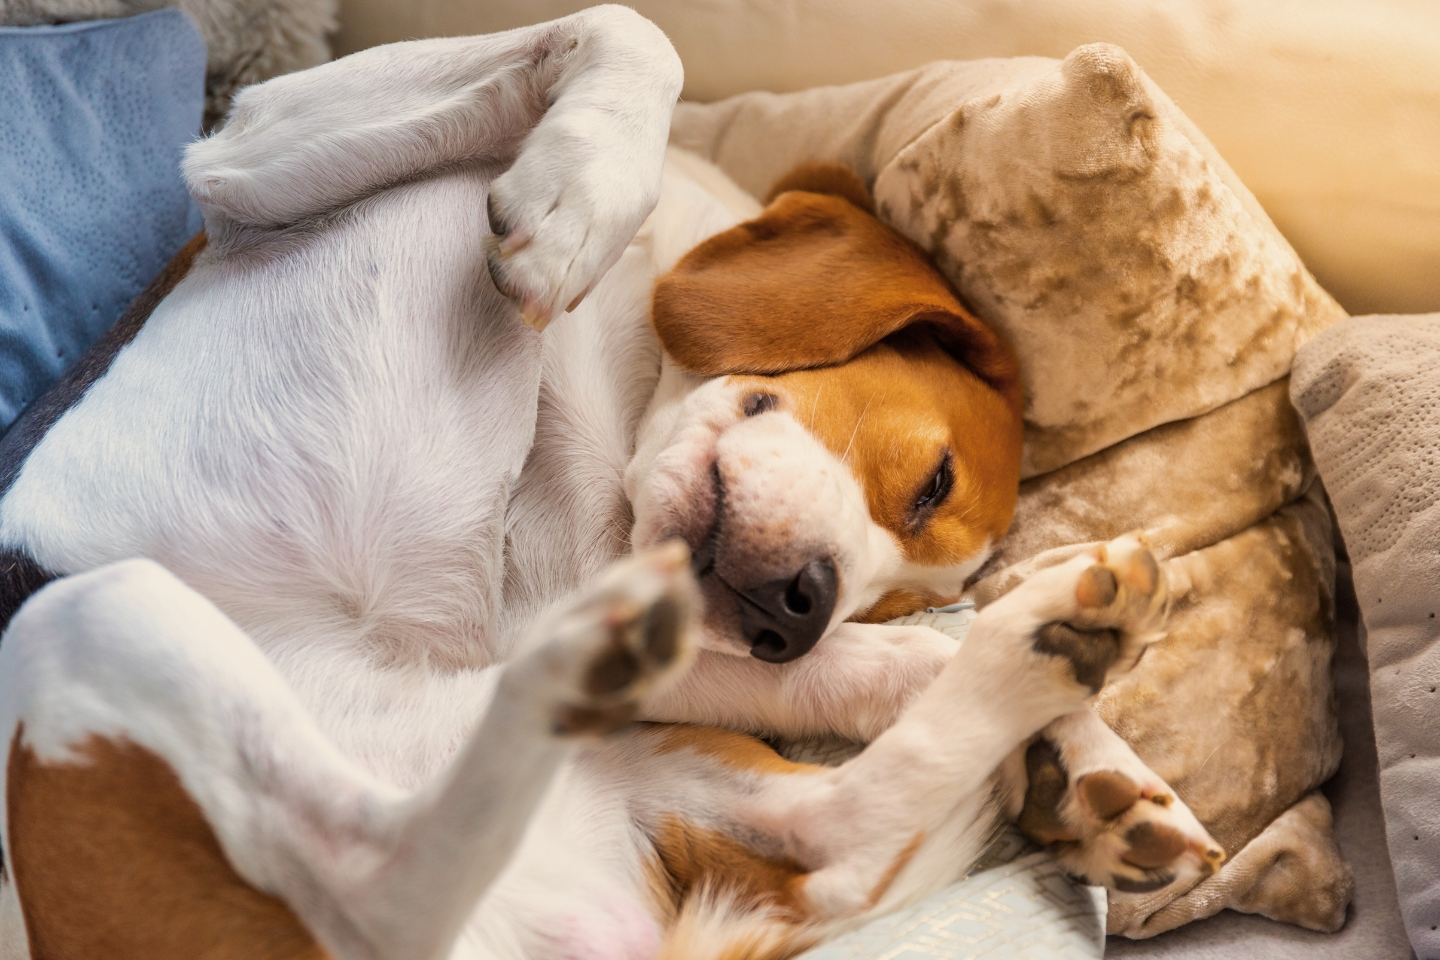 un chien endormi les 4 pattes en l'air, recroquevillé en position de confort dans son panier.